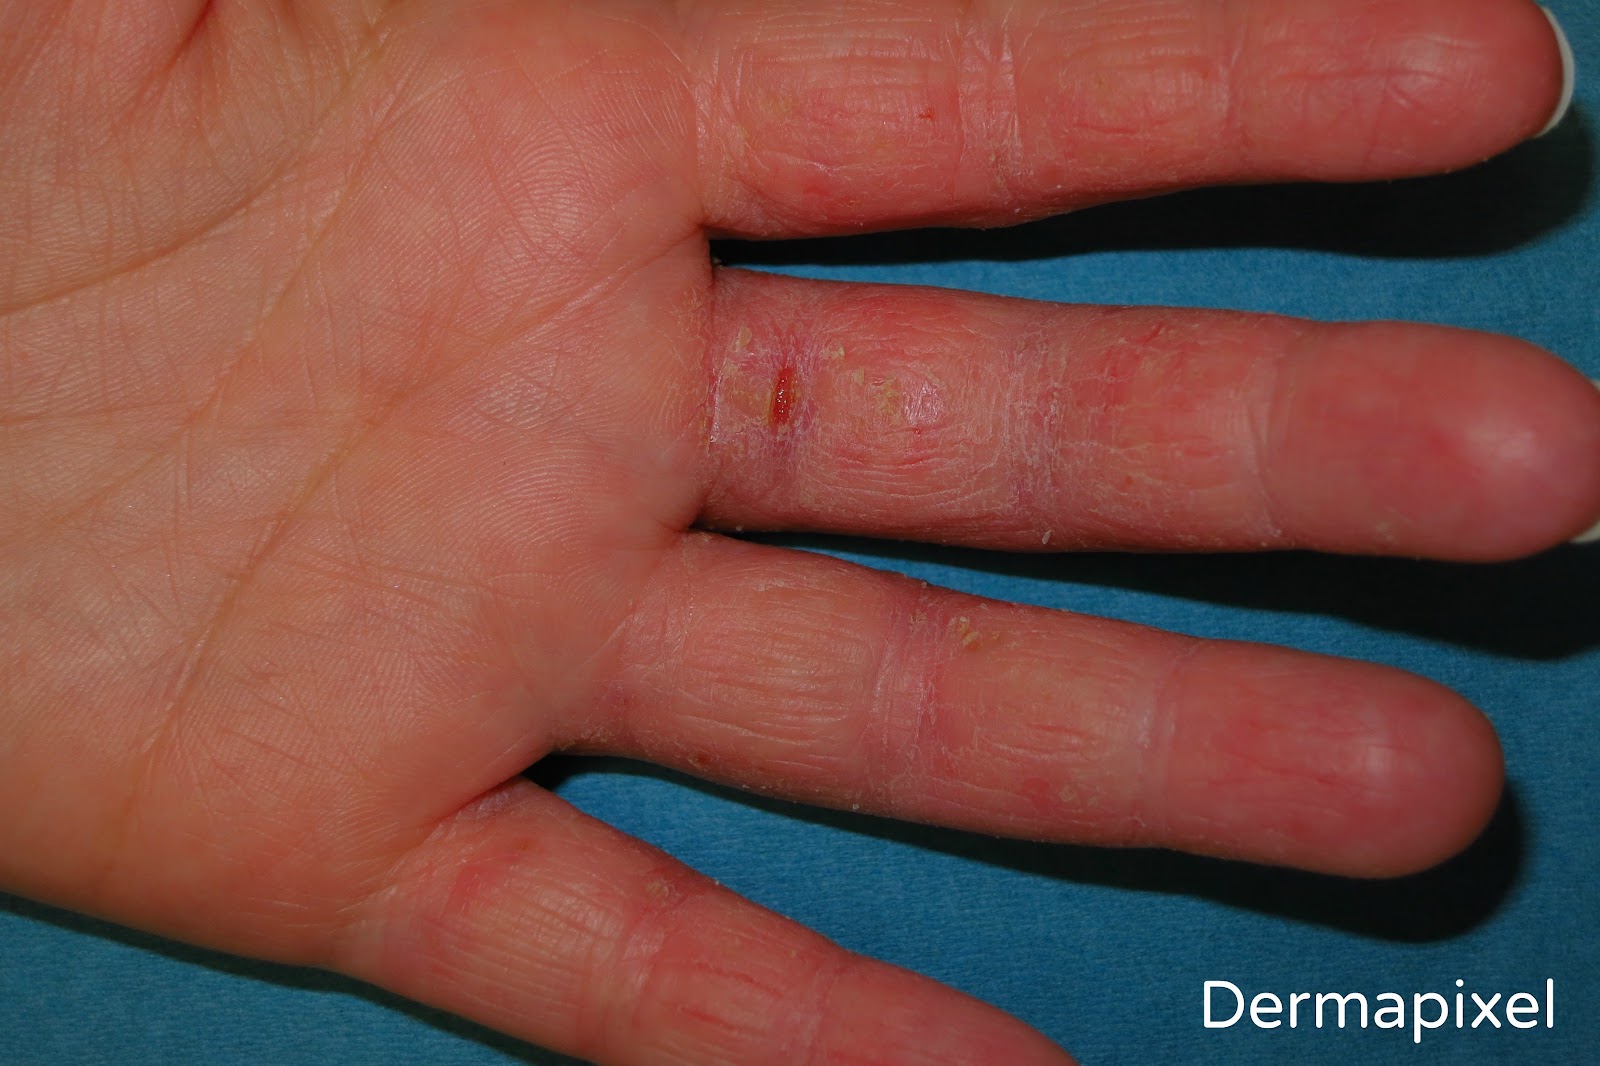 extraño Recuperar Robar a Dermapixel: Me pican las manos